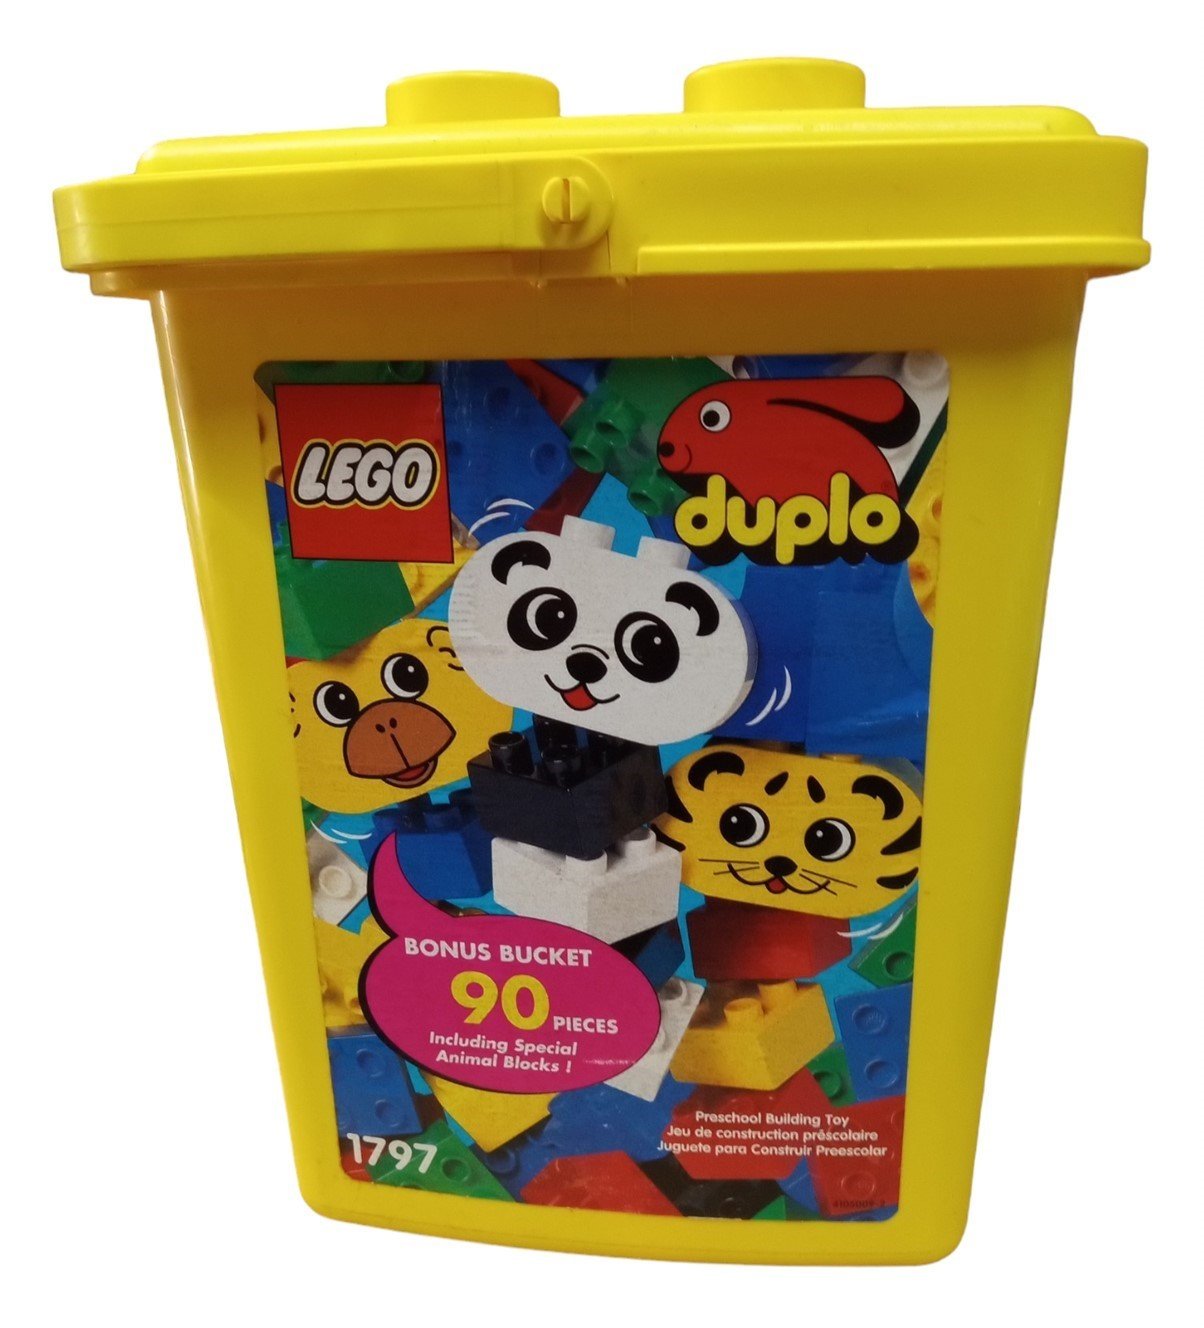 LEGO Duplo Bonus Bucket Set Of 86 Building Blocks Vintage Collectible Toy